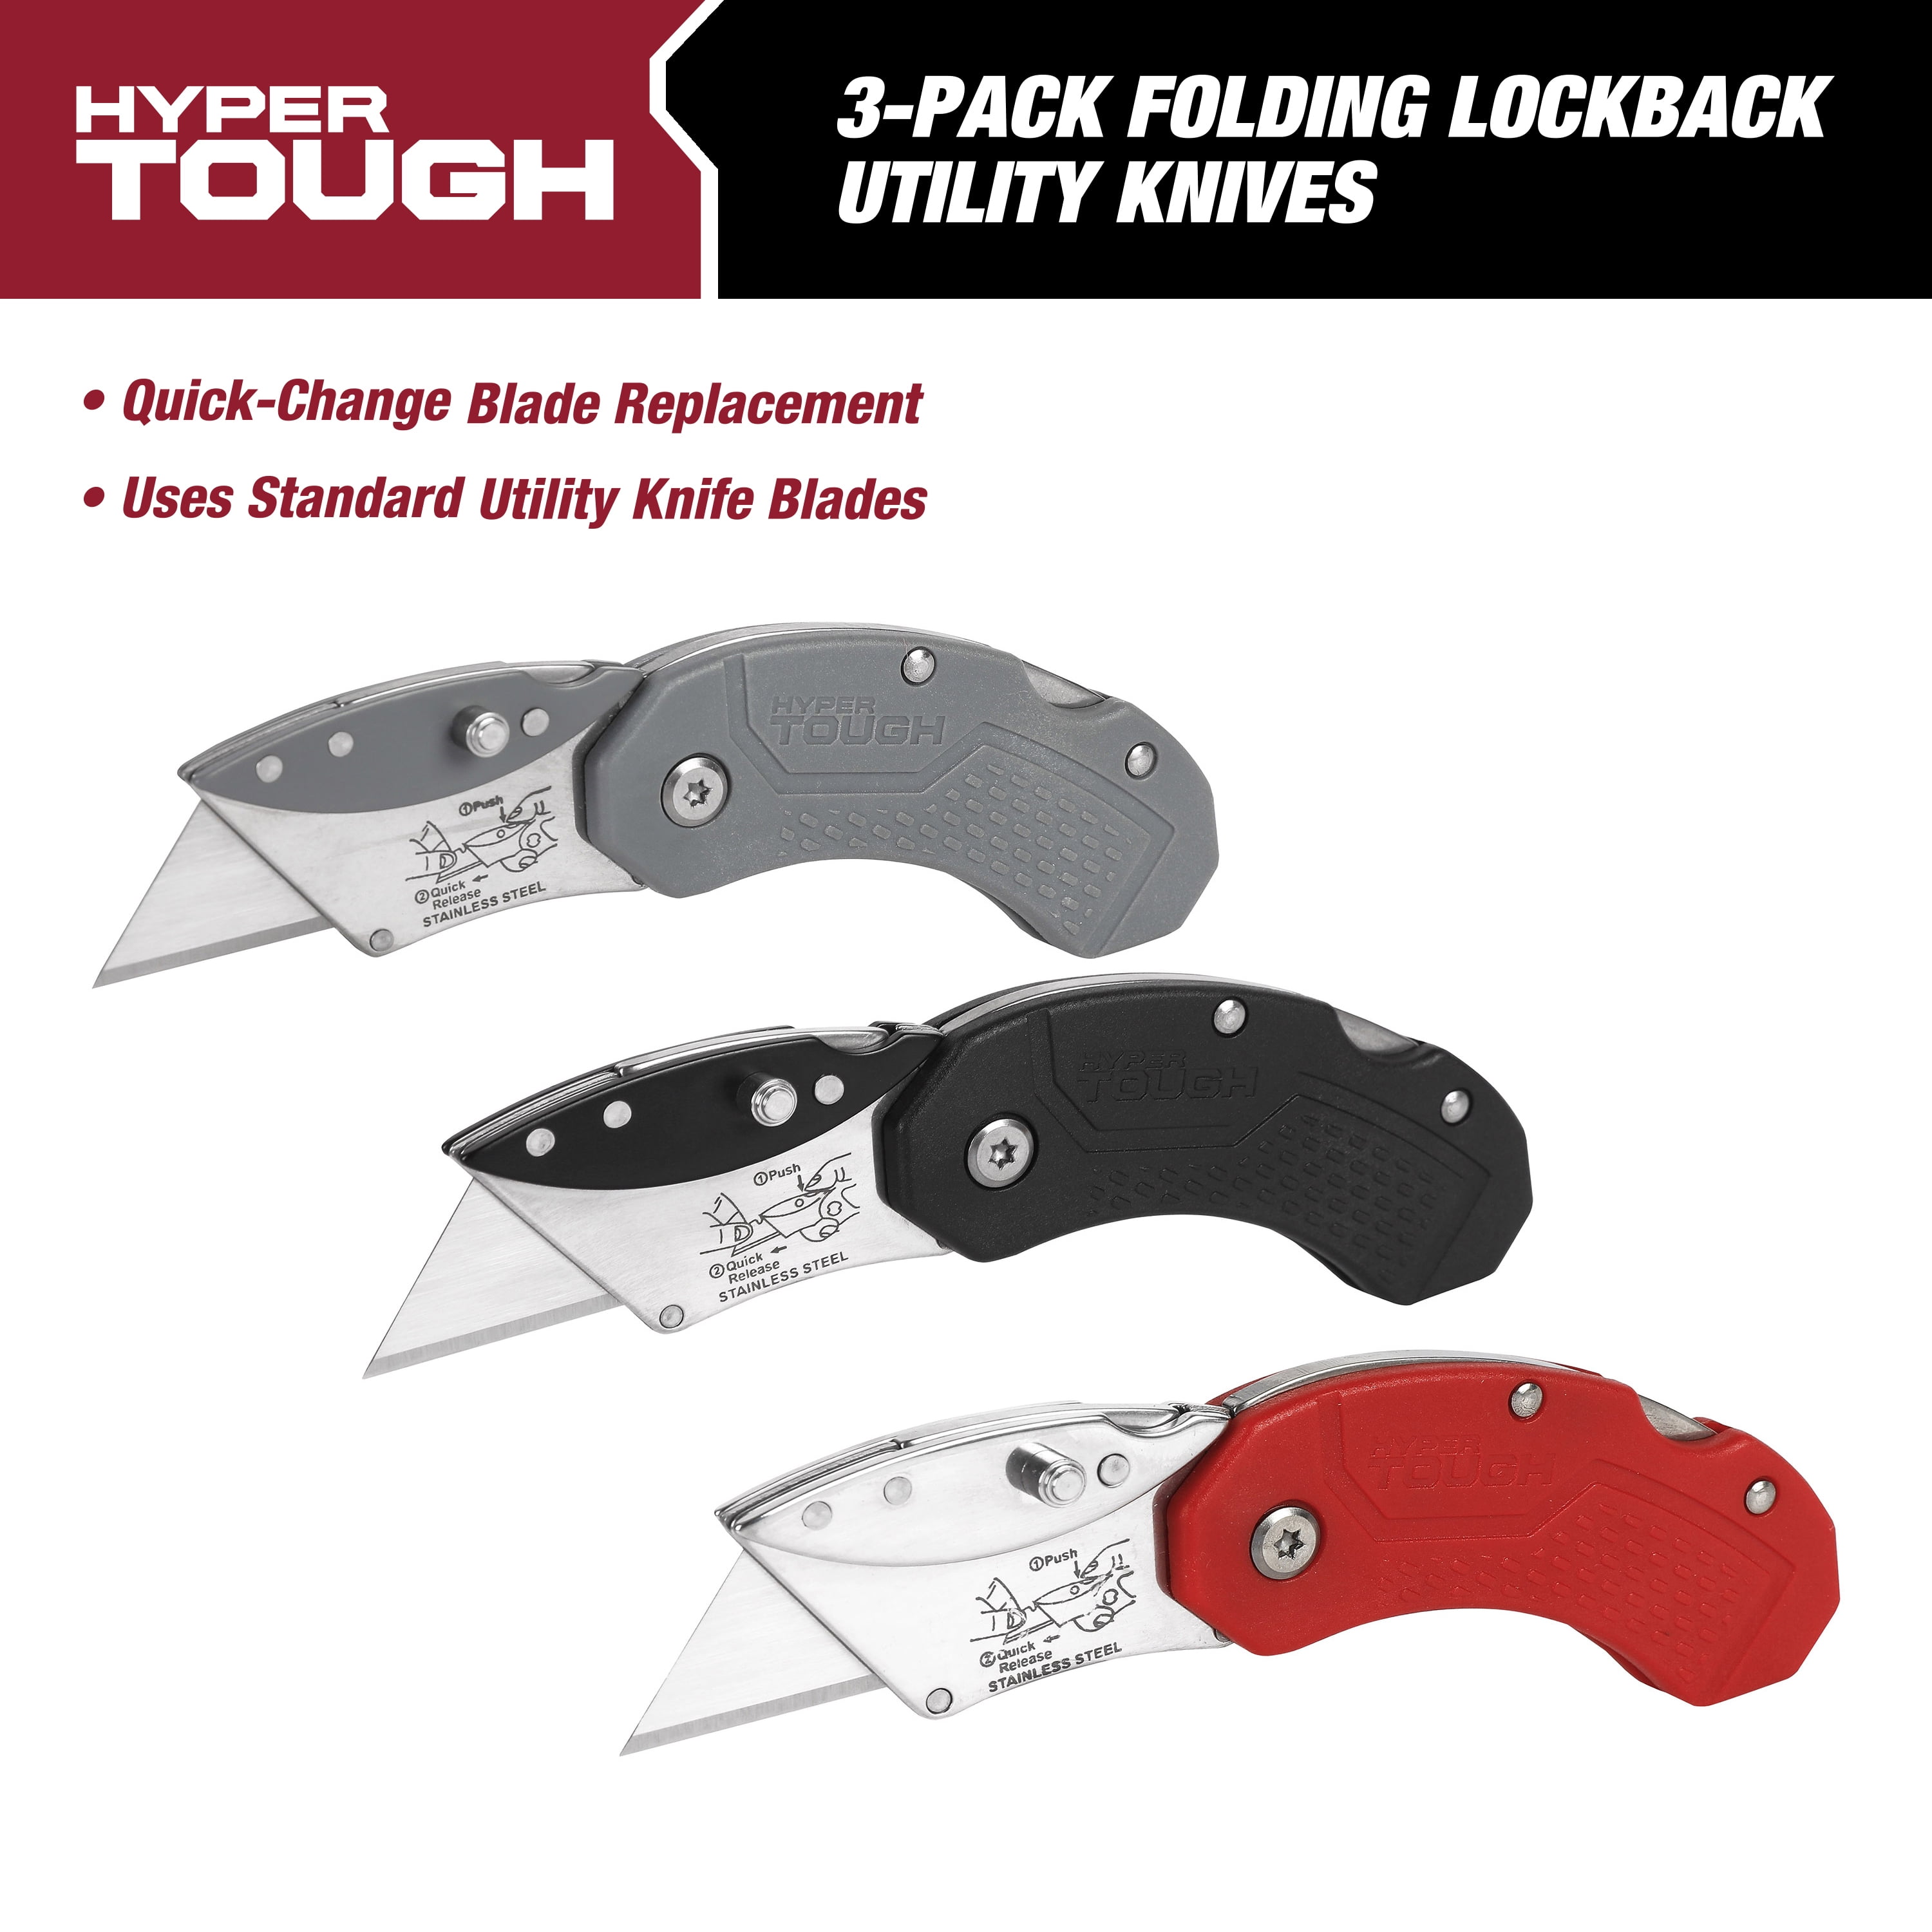 Hyper Tough 3-Pack Folding Lockback Utility Knives, Model 10715